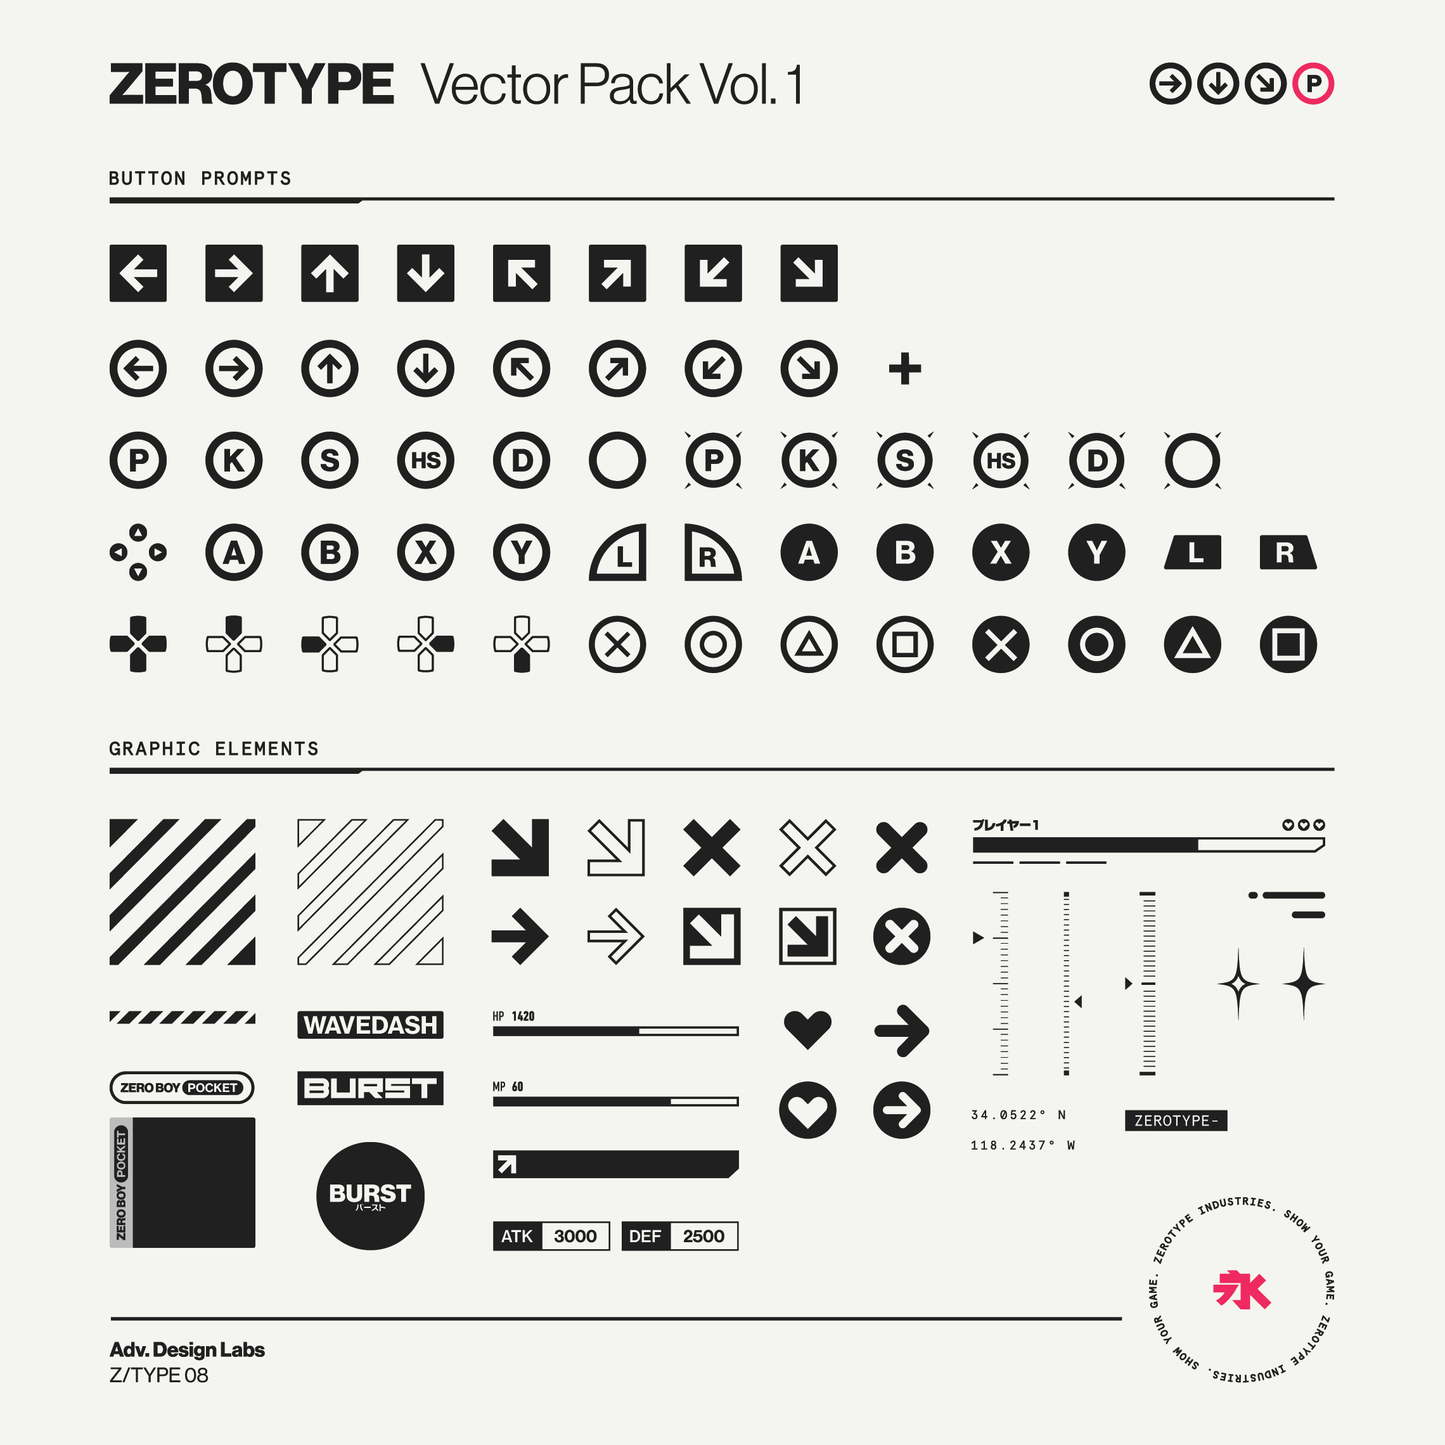 ZEROTYPE Vector Pack Vol. 1